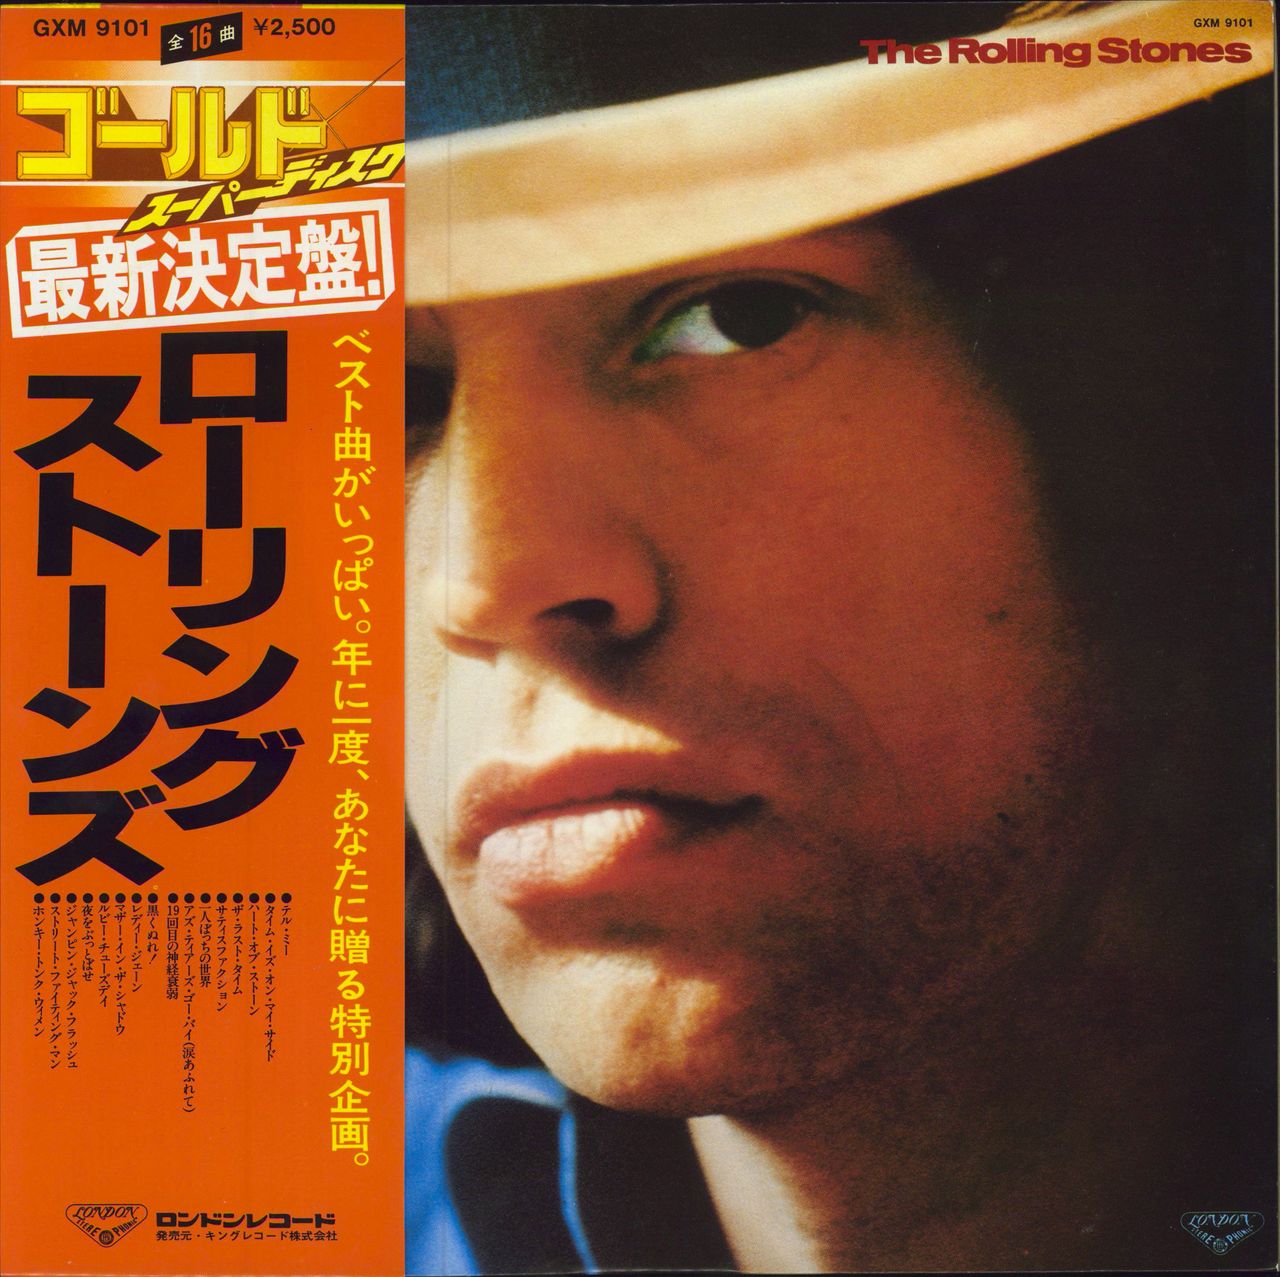 The Rolling Stones Gold Superdisc + Obi - EX Japanese vinyl LP album (LP record) GXM-9101